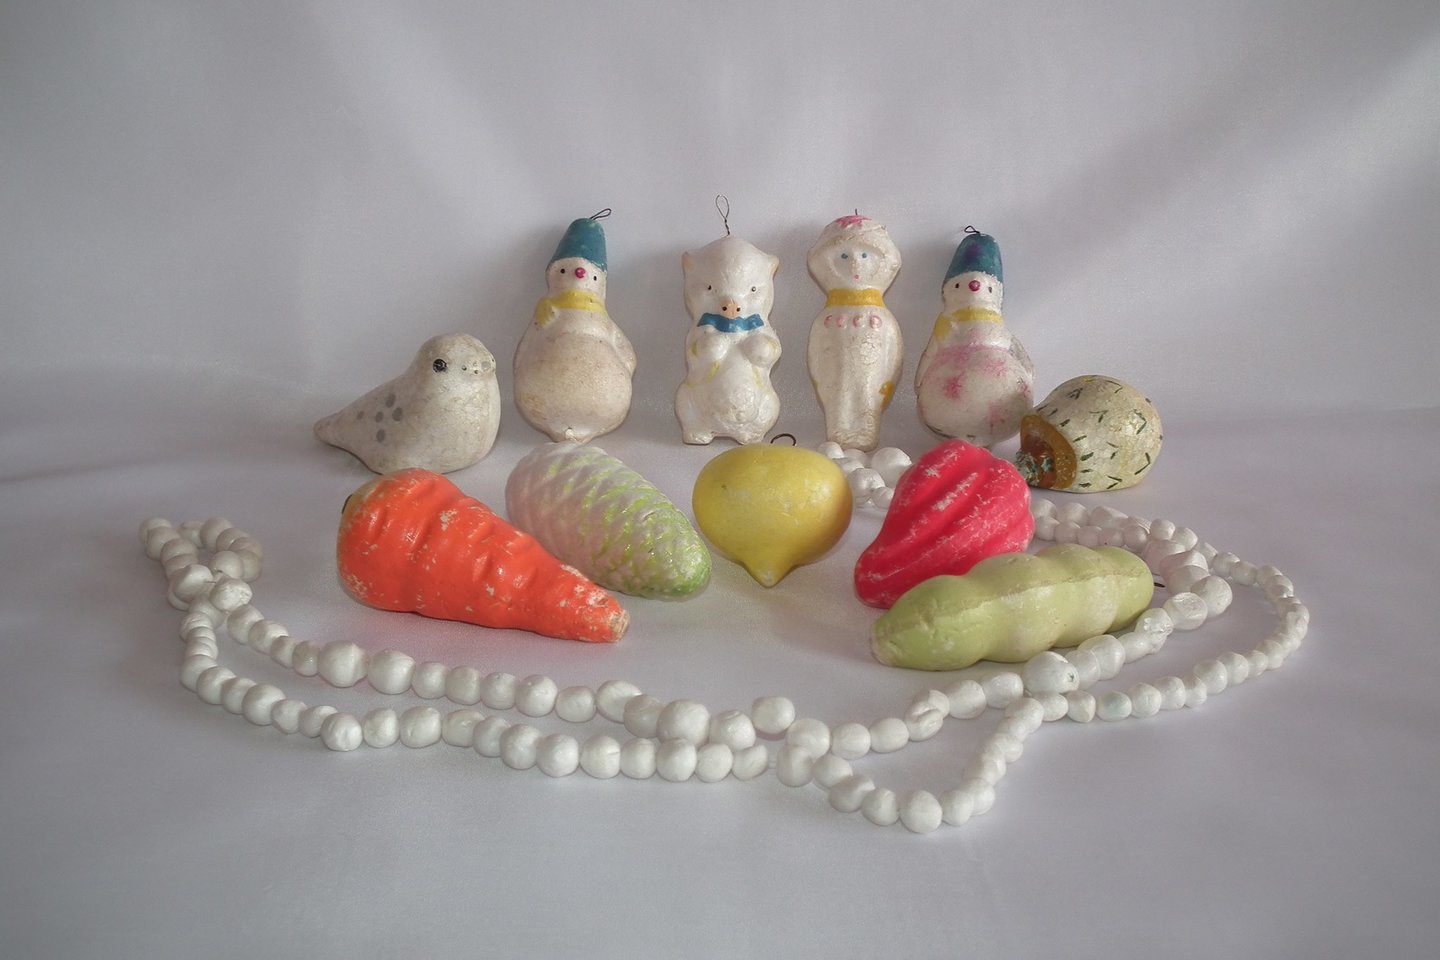  Žaisliukai iš vadinamosios jūros putos.<br>Muziejaus archyvo nuotr.